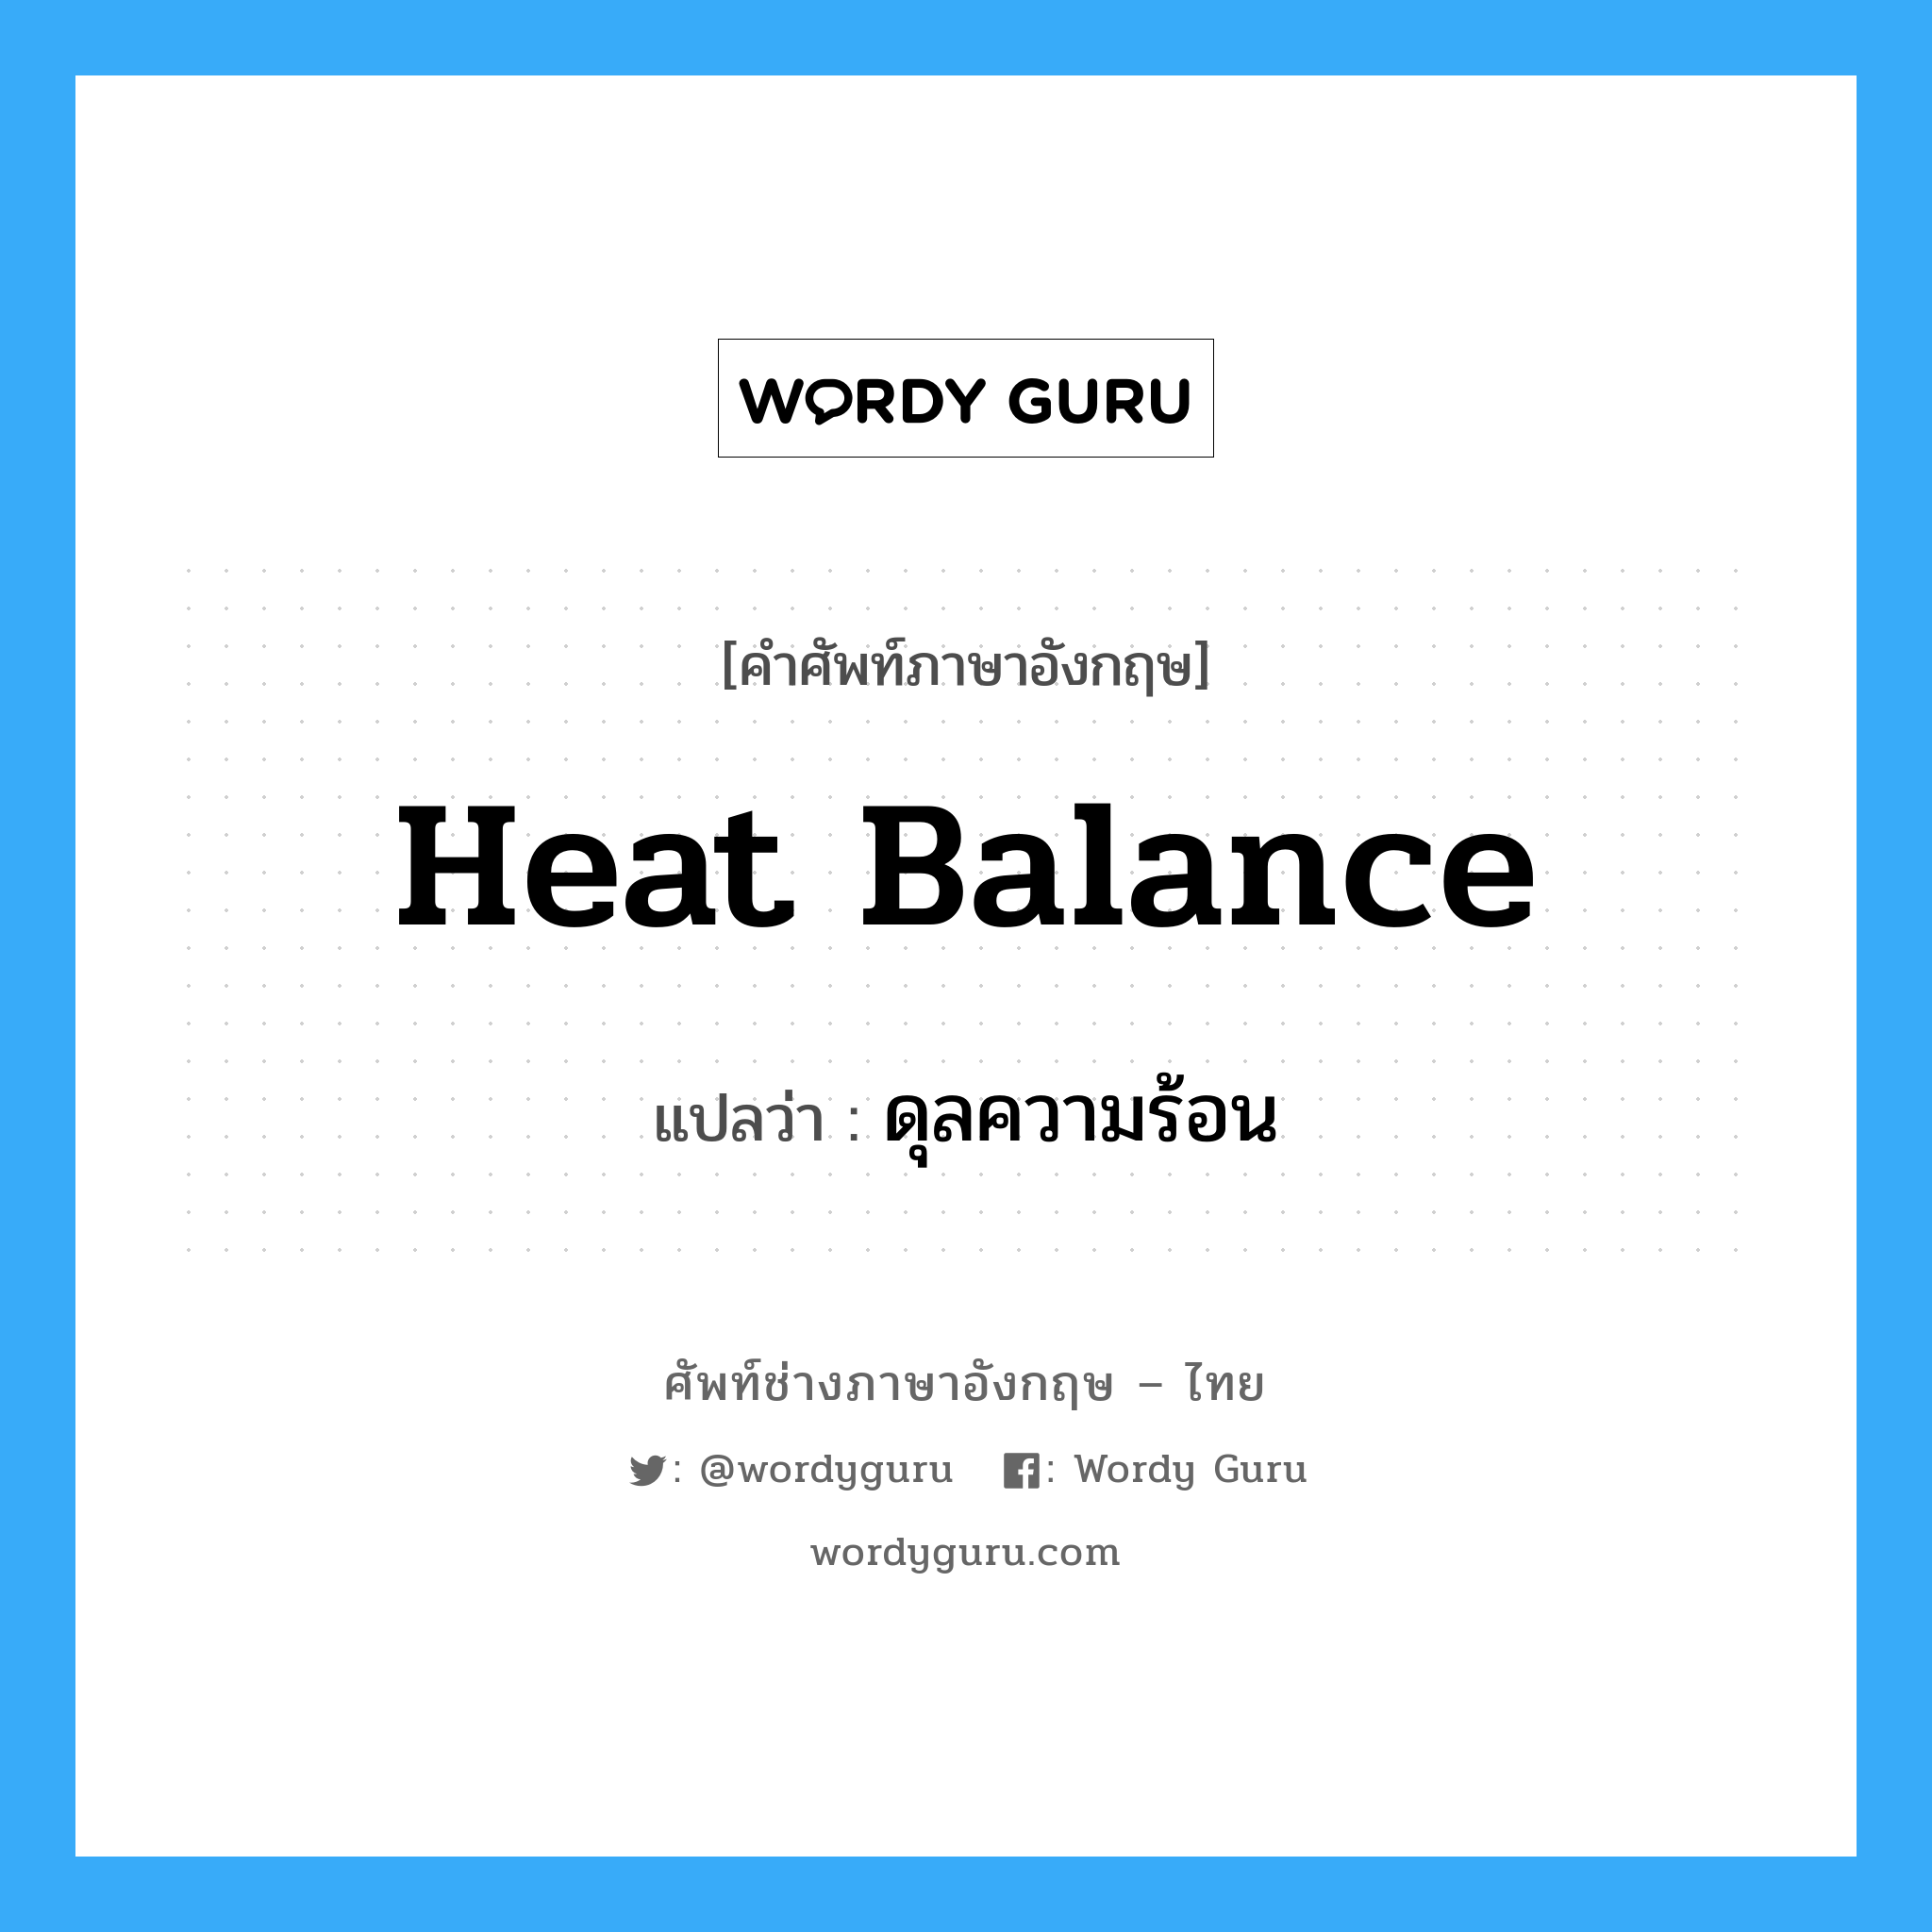 ดุลความร้อน ภาษาอังกฤษ?, คำศัพท์ช่างภาษาอังกฤษ - ไทย ดุลความร้อน คำศัพท์ภาษาอังกฤษ ดุลความร้อน แปลว่า heat balance